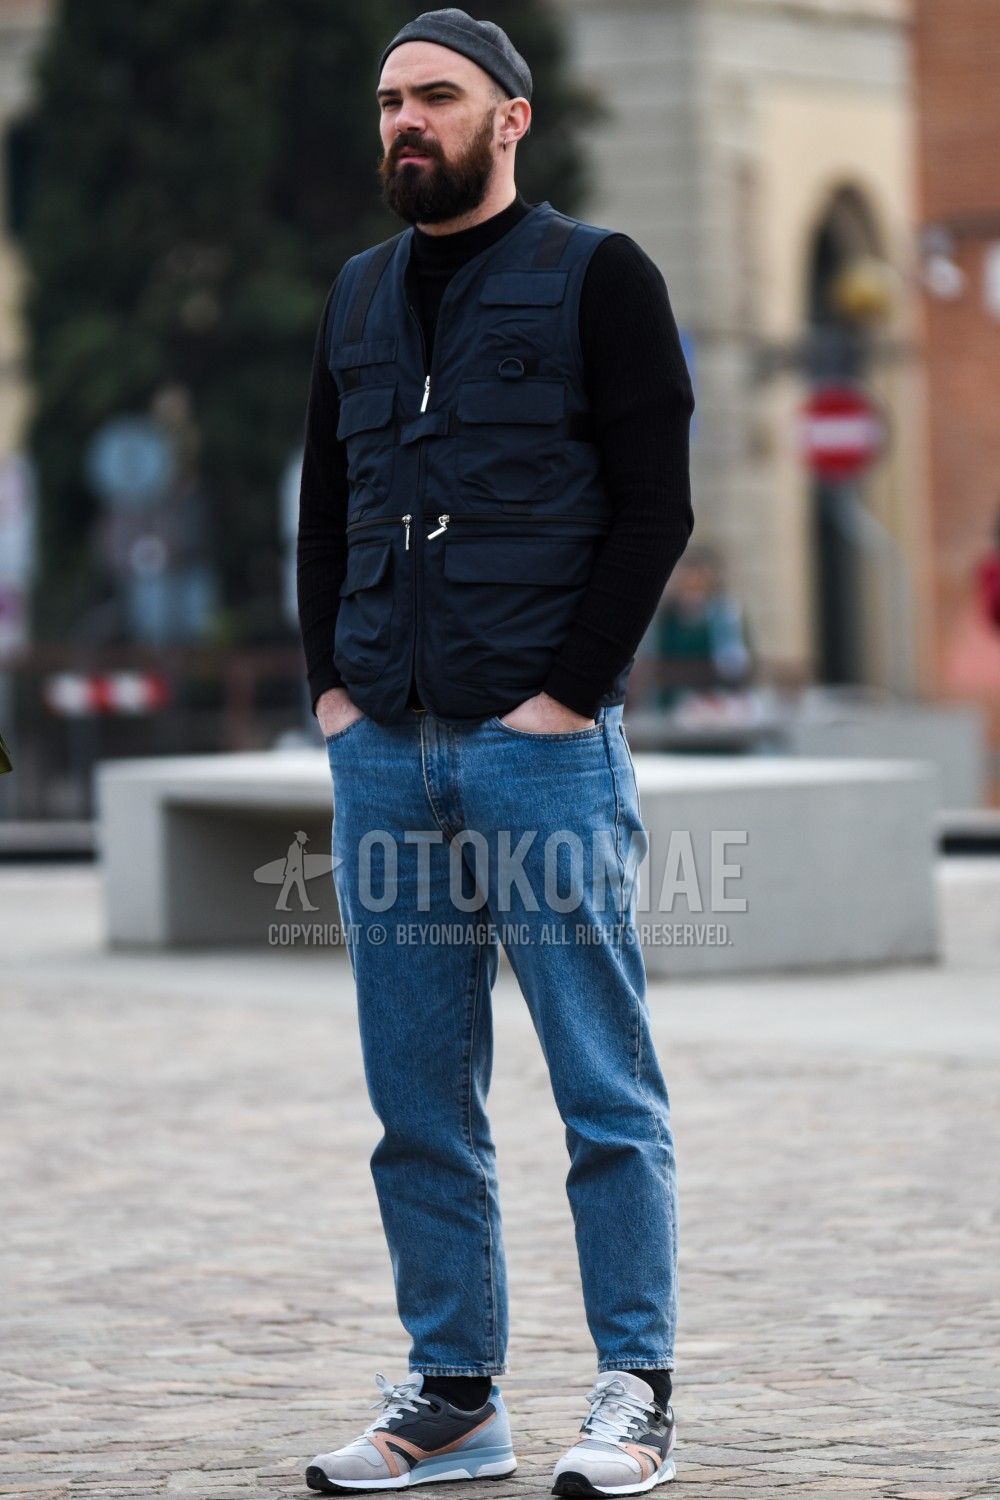 ベスト コーデ メンズ特集 アウター使いした秋冬の着こなしを紹介 メンズファッションメディア Otokomaeotokomae 男前研究所